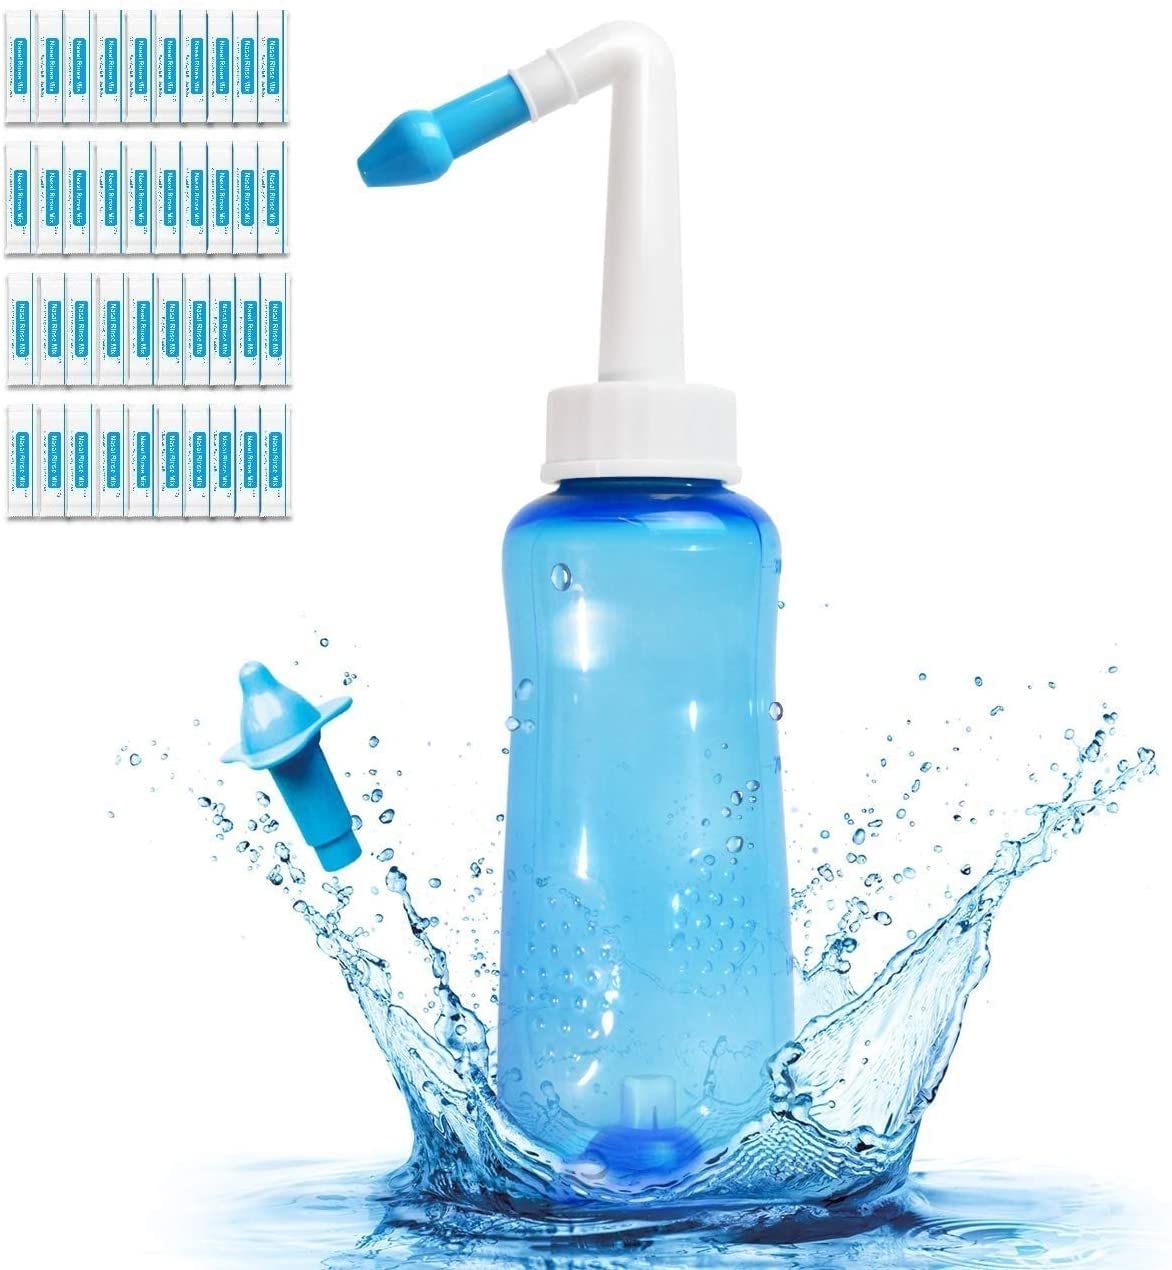 Neti Pot,Sinus Rinse Bottle 300ml Nasal Rinse Kit Nose Washing